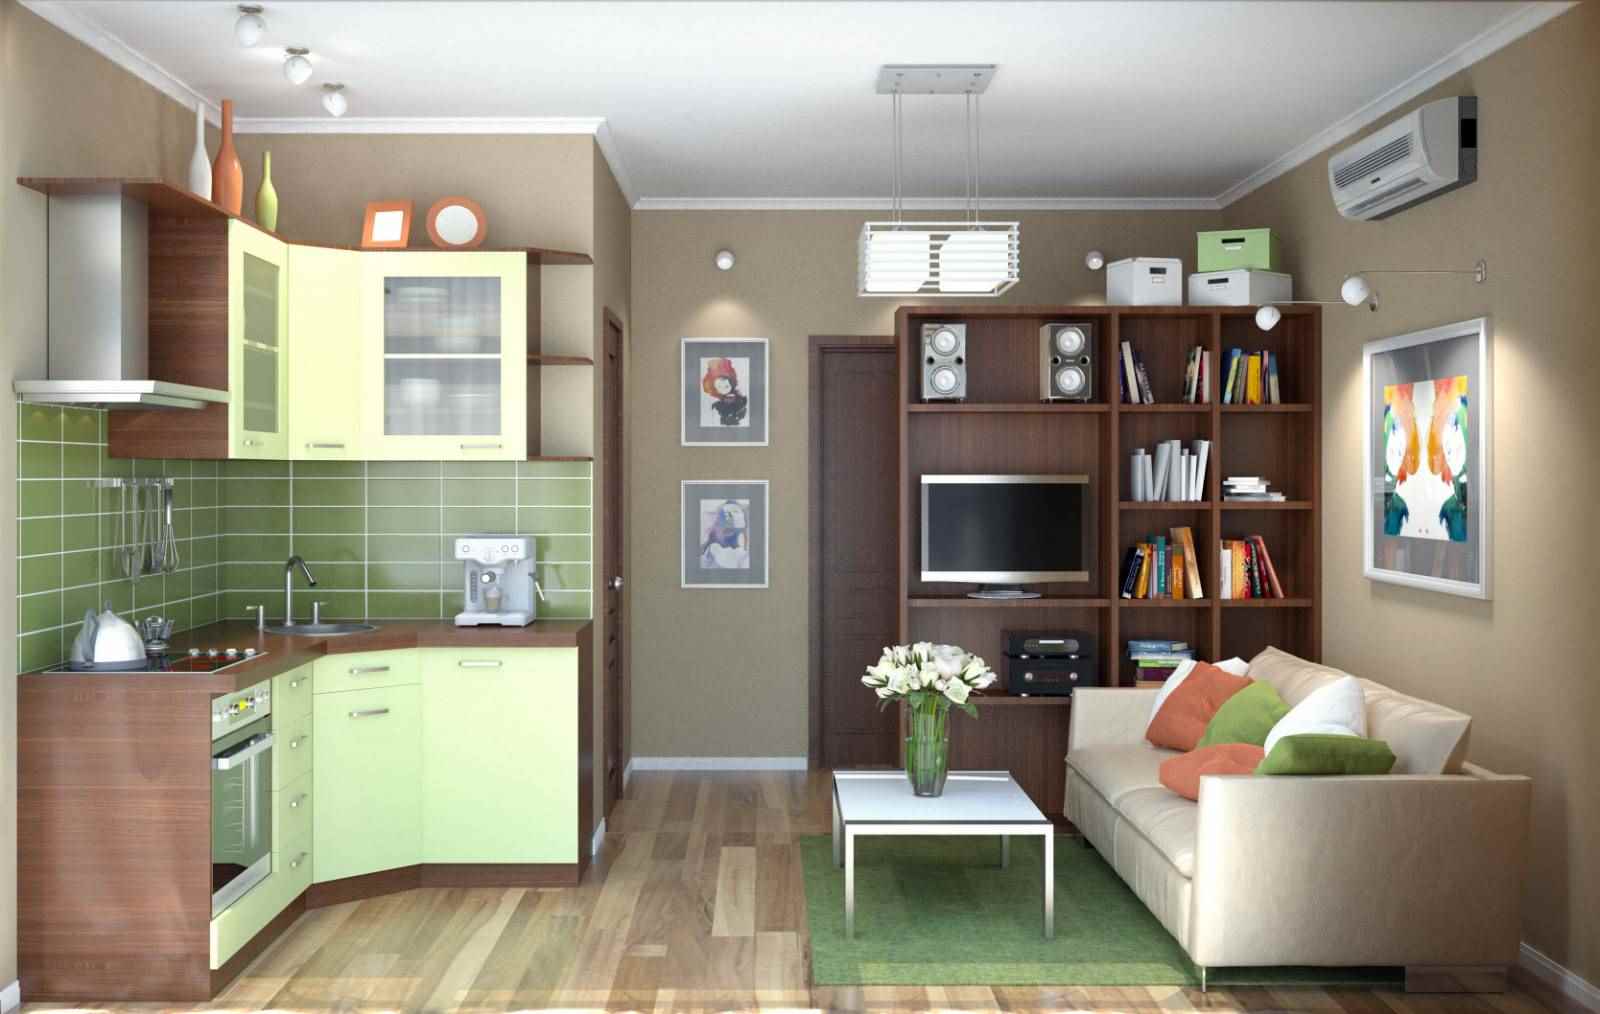 26 kvadrātmetru studijas tipa dzīvokļa neparasta dizaina variants